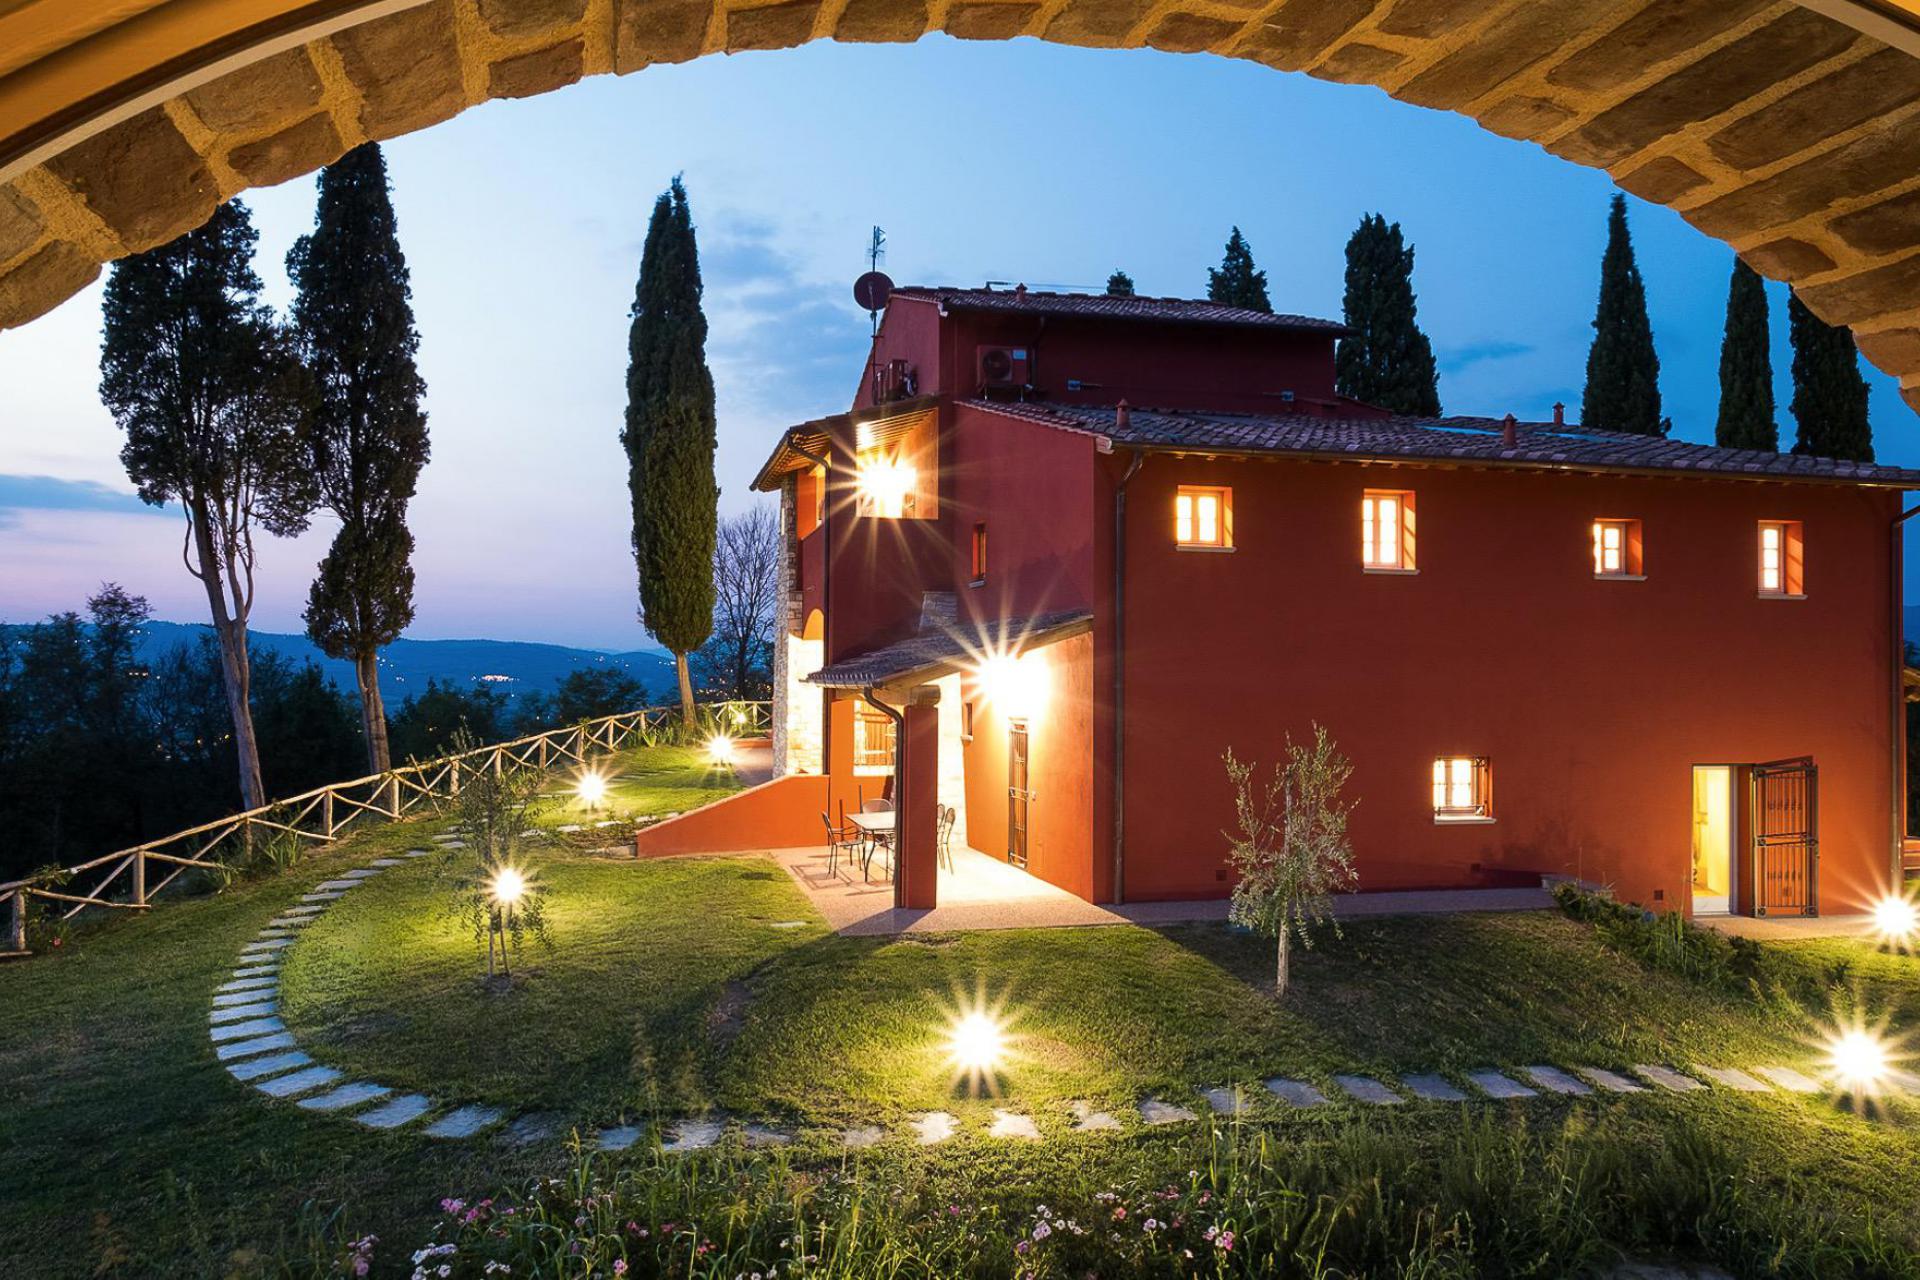 3. Familievriendelijke appartementen in hartje Toscane